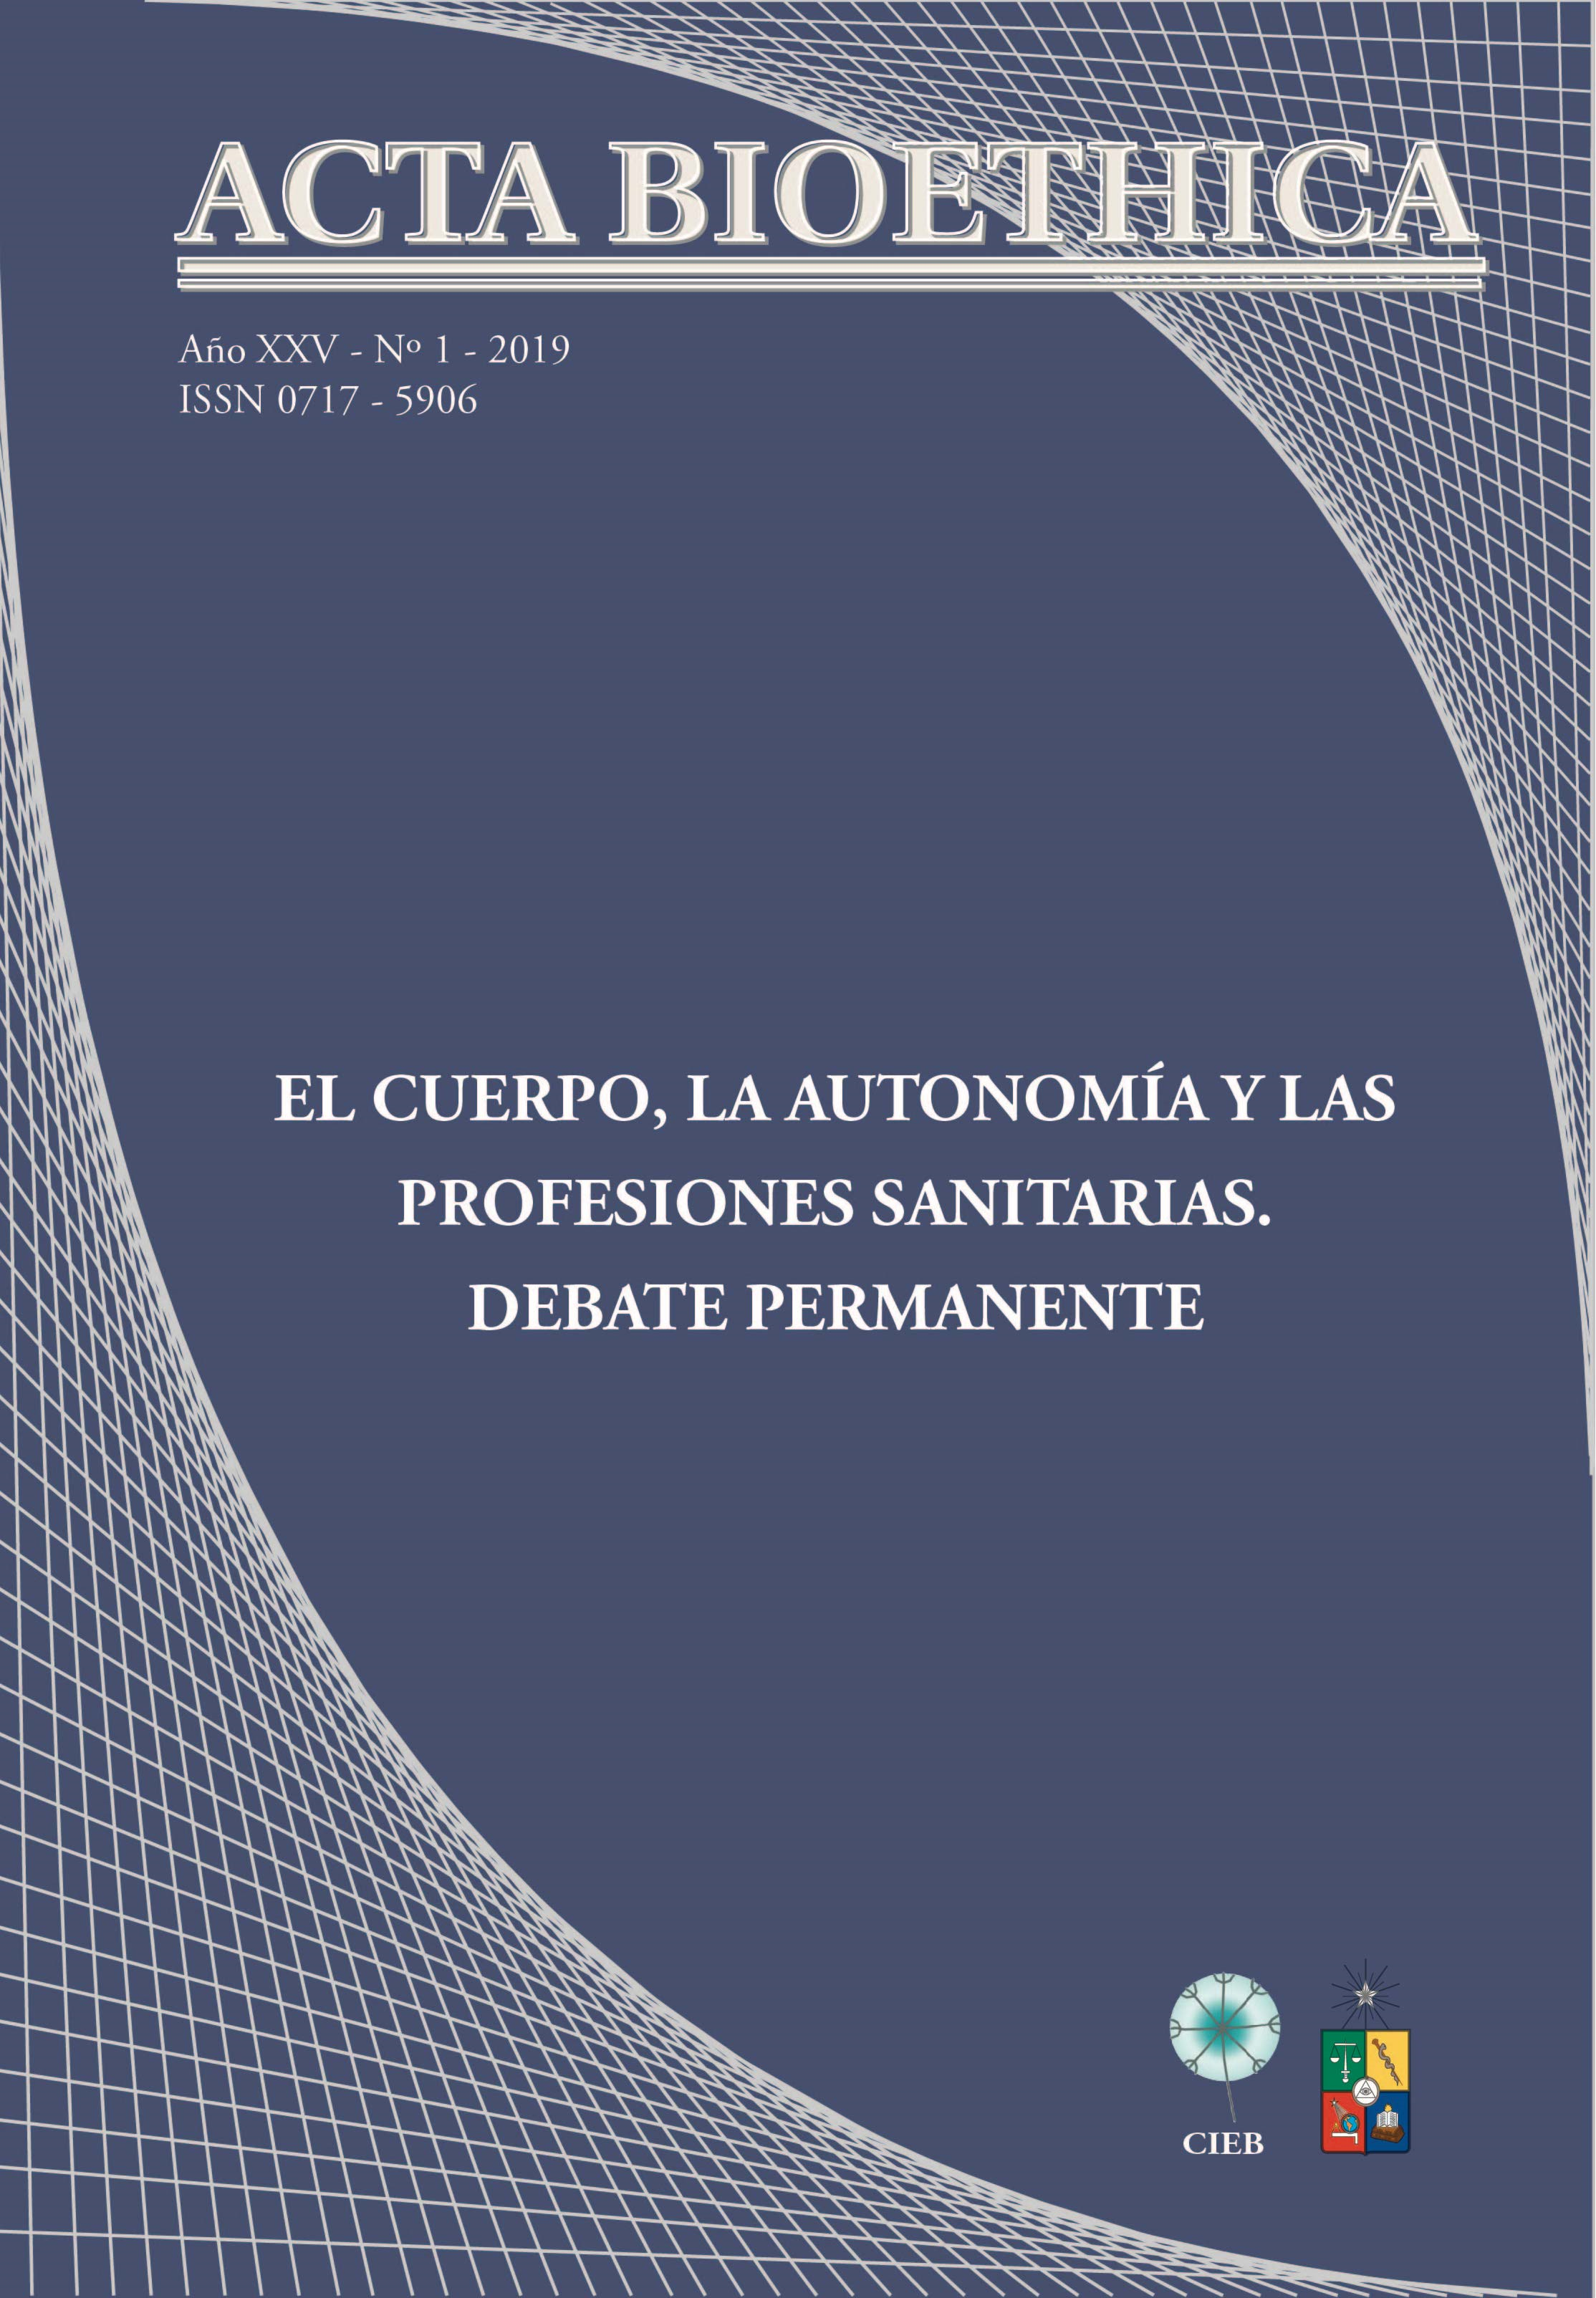 							Ver Vol. 25 Núm. 1 (2019): El cuerpo, la autonomía y las profesiones sanitarias. Debate permanente
						